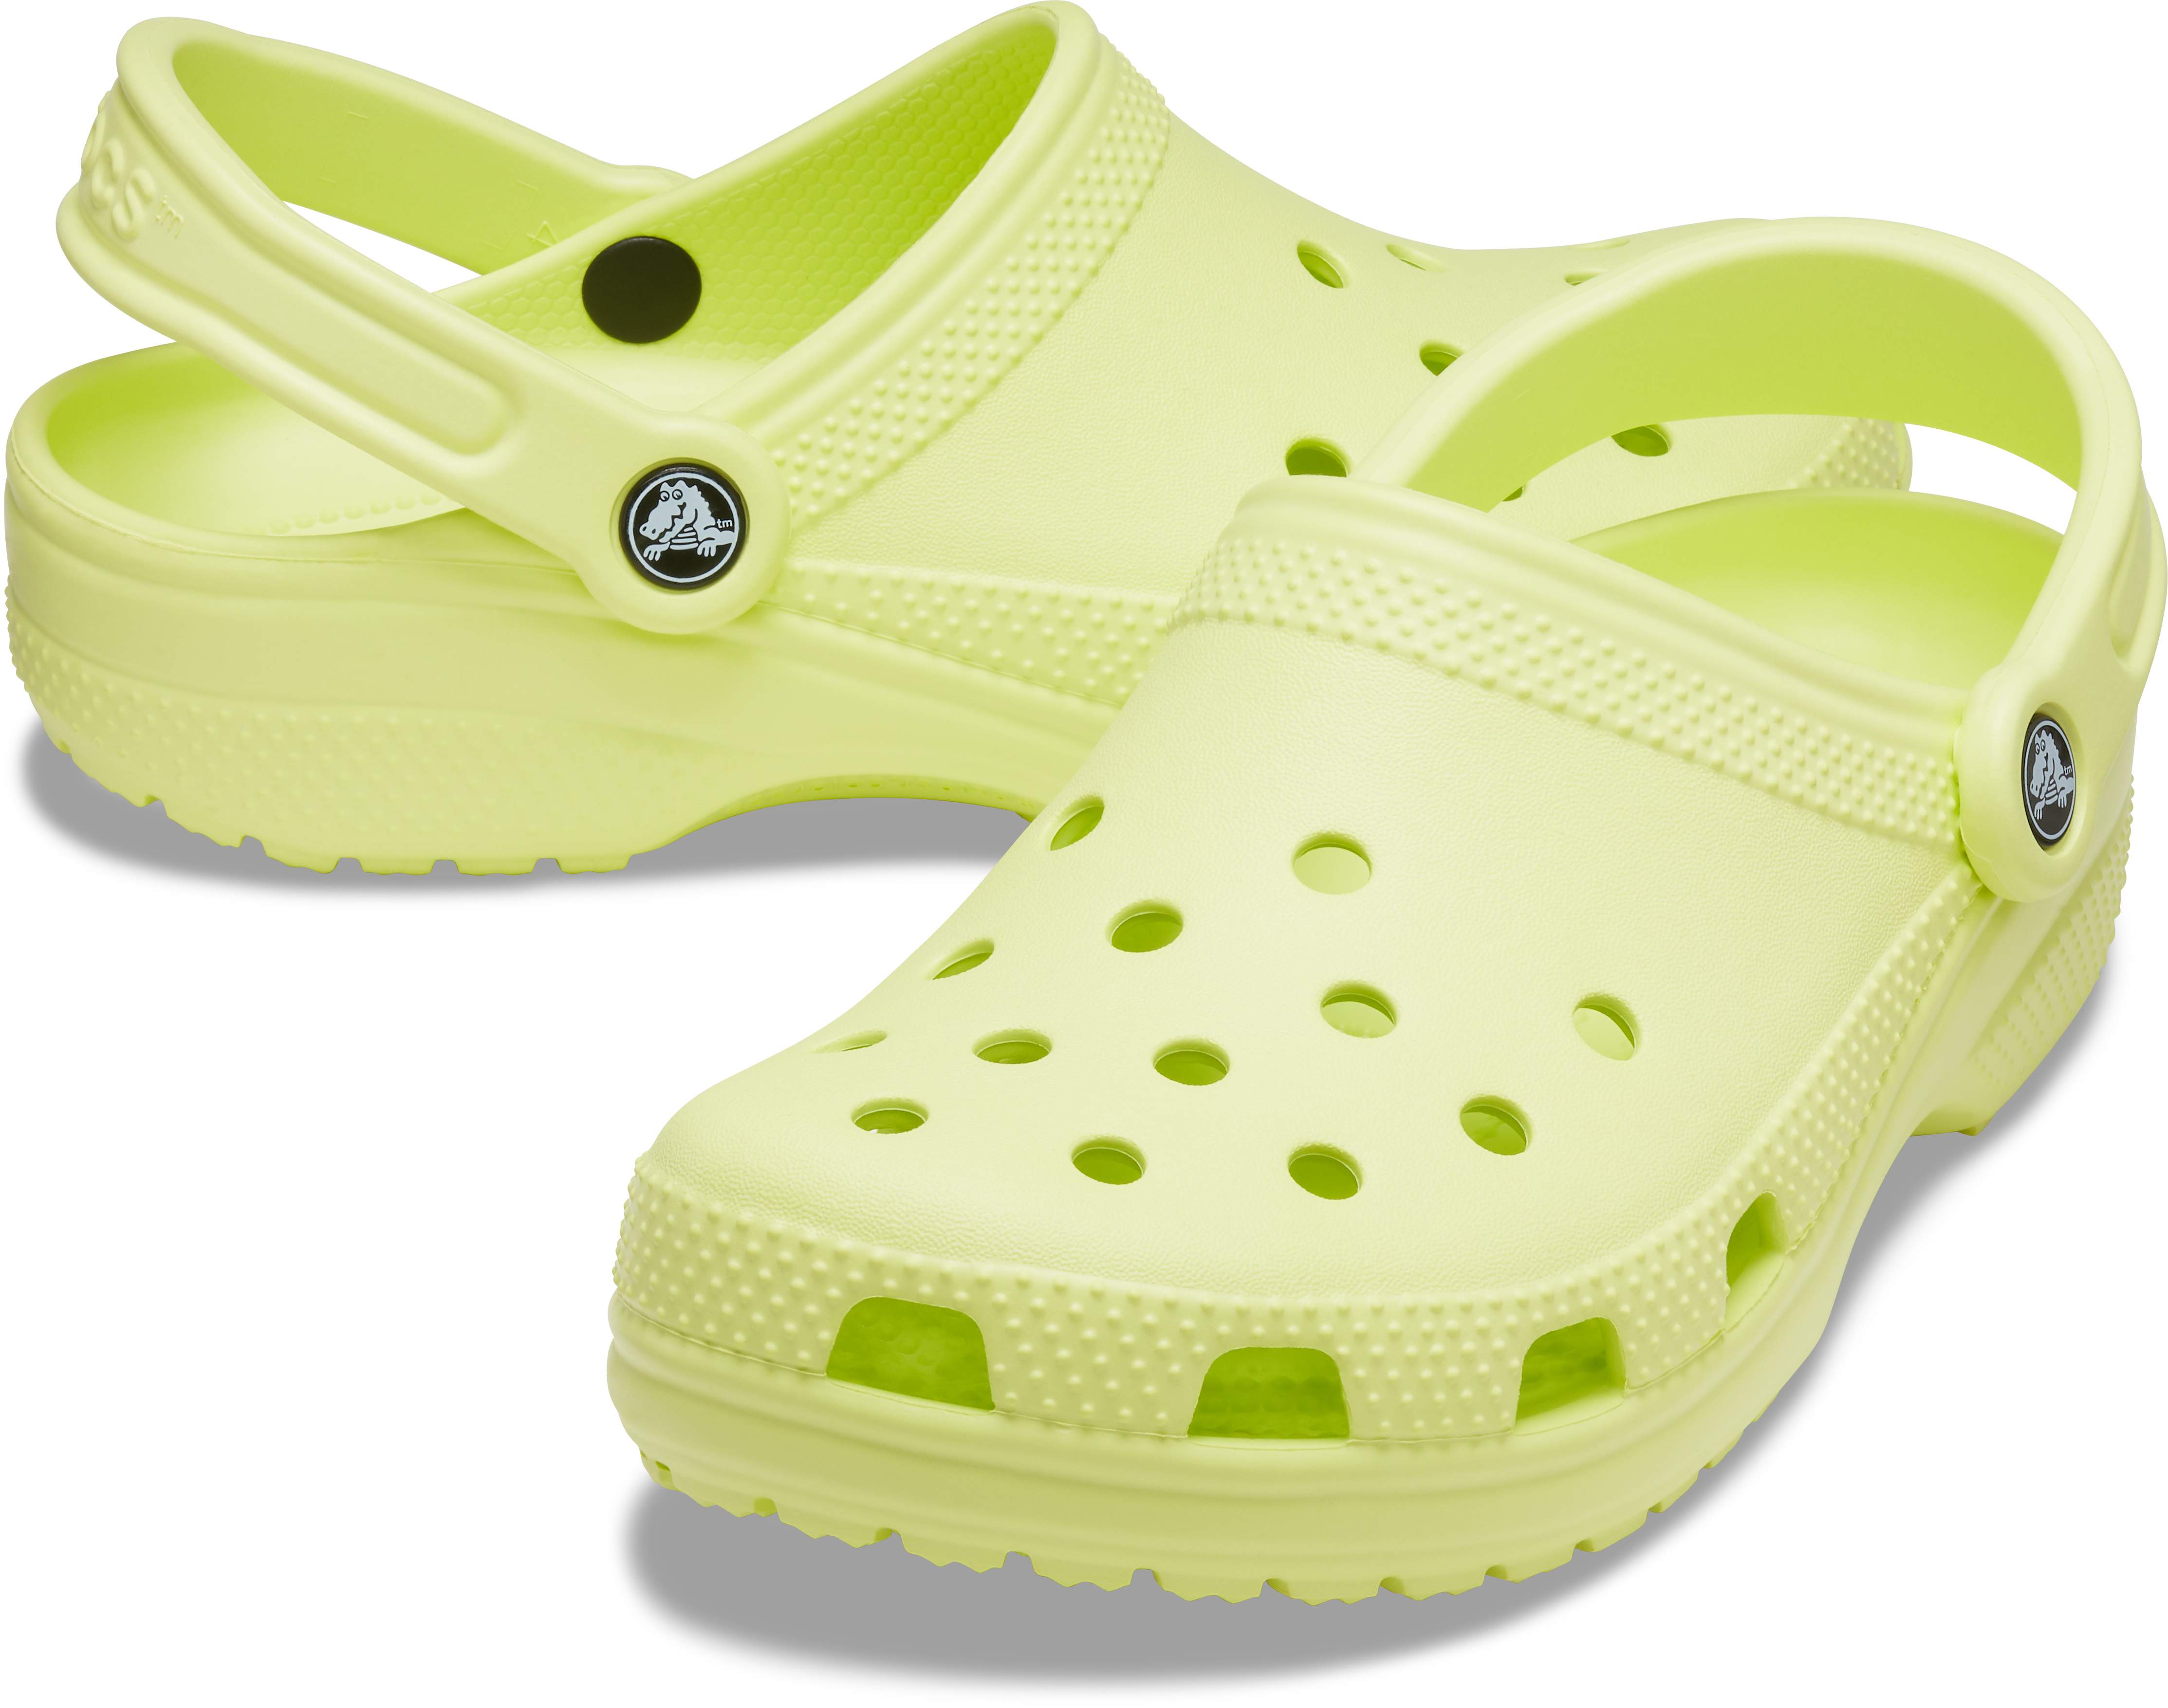 crocs chucks